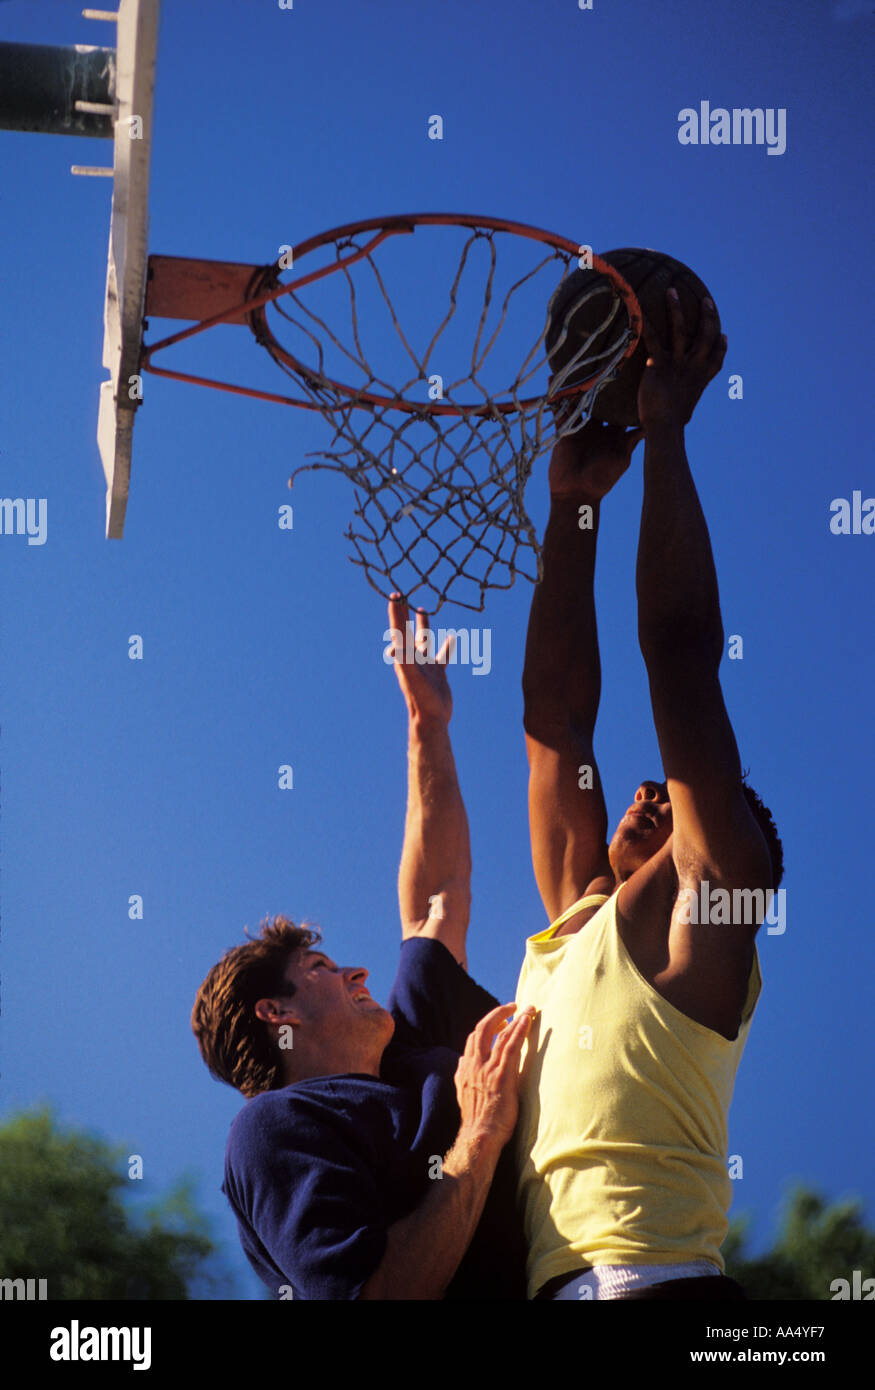 Un joueur tente de la Dunk basket-ball sur son adversaire Banque D'Images